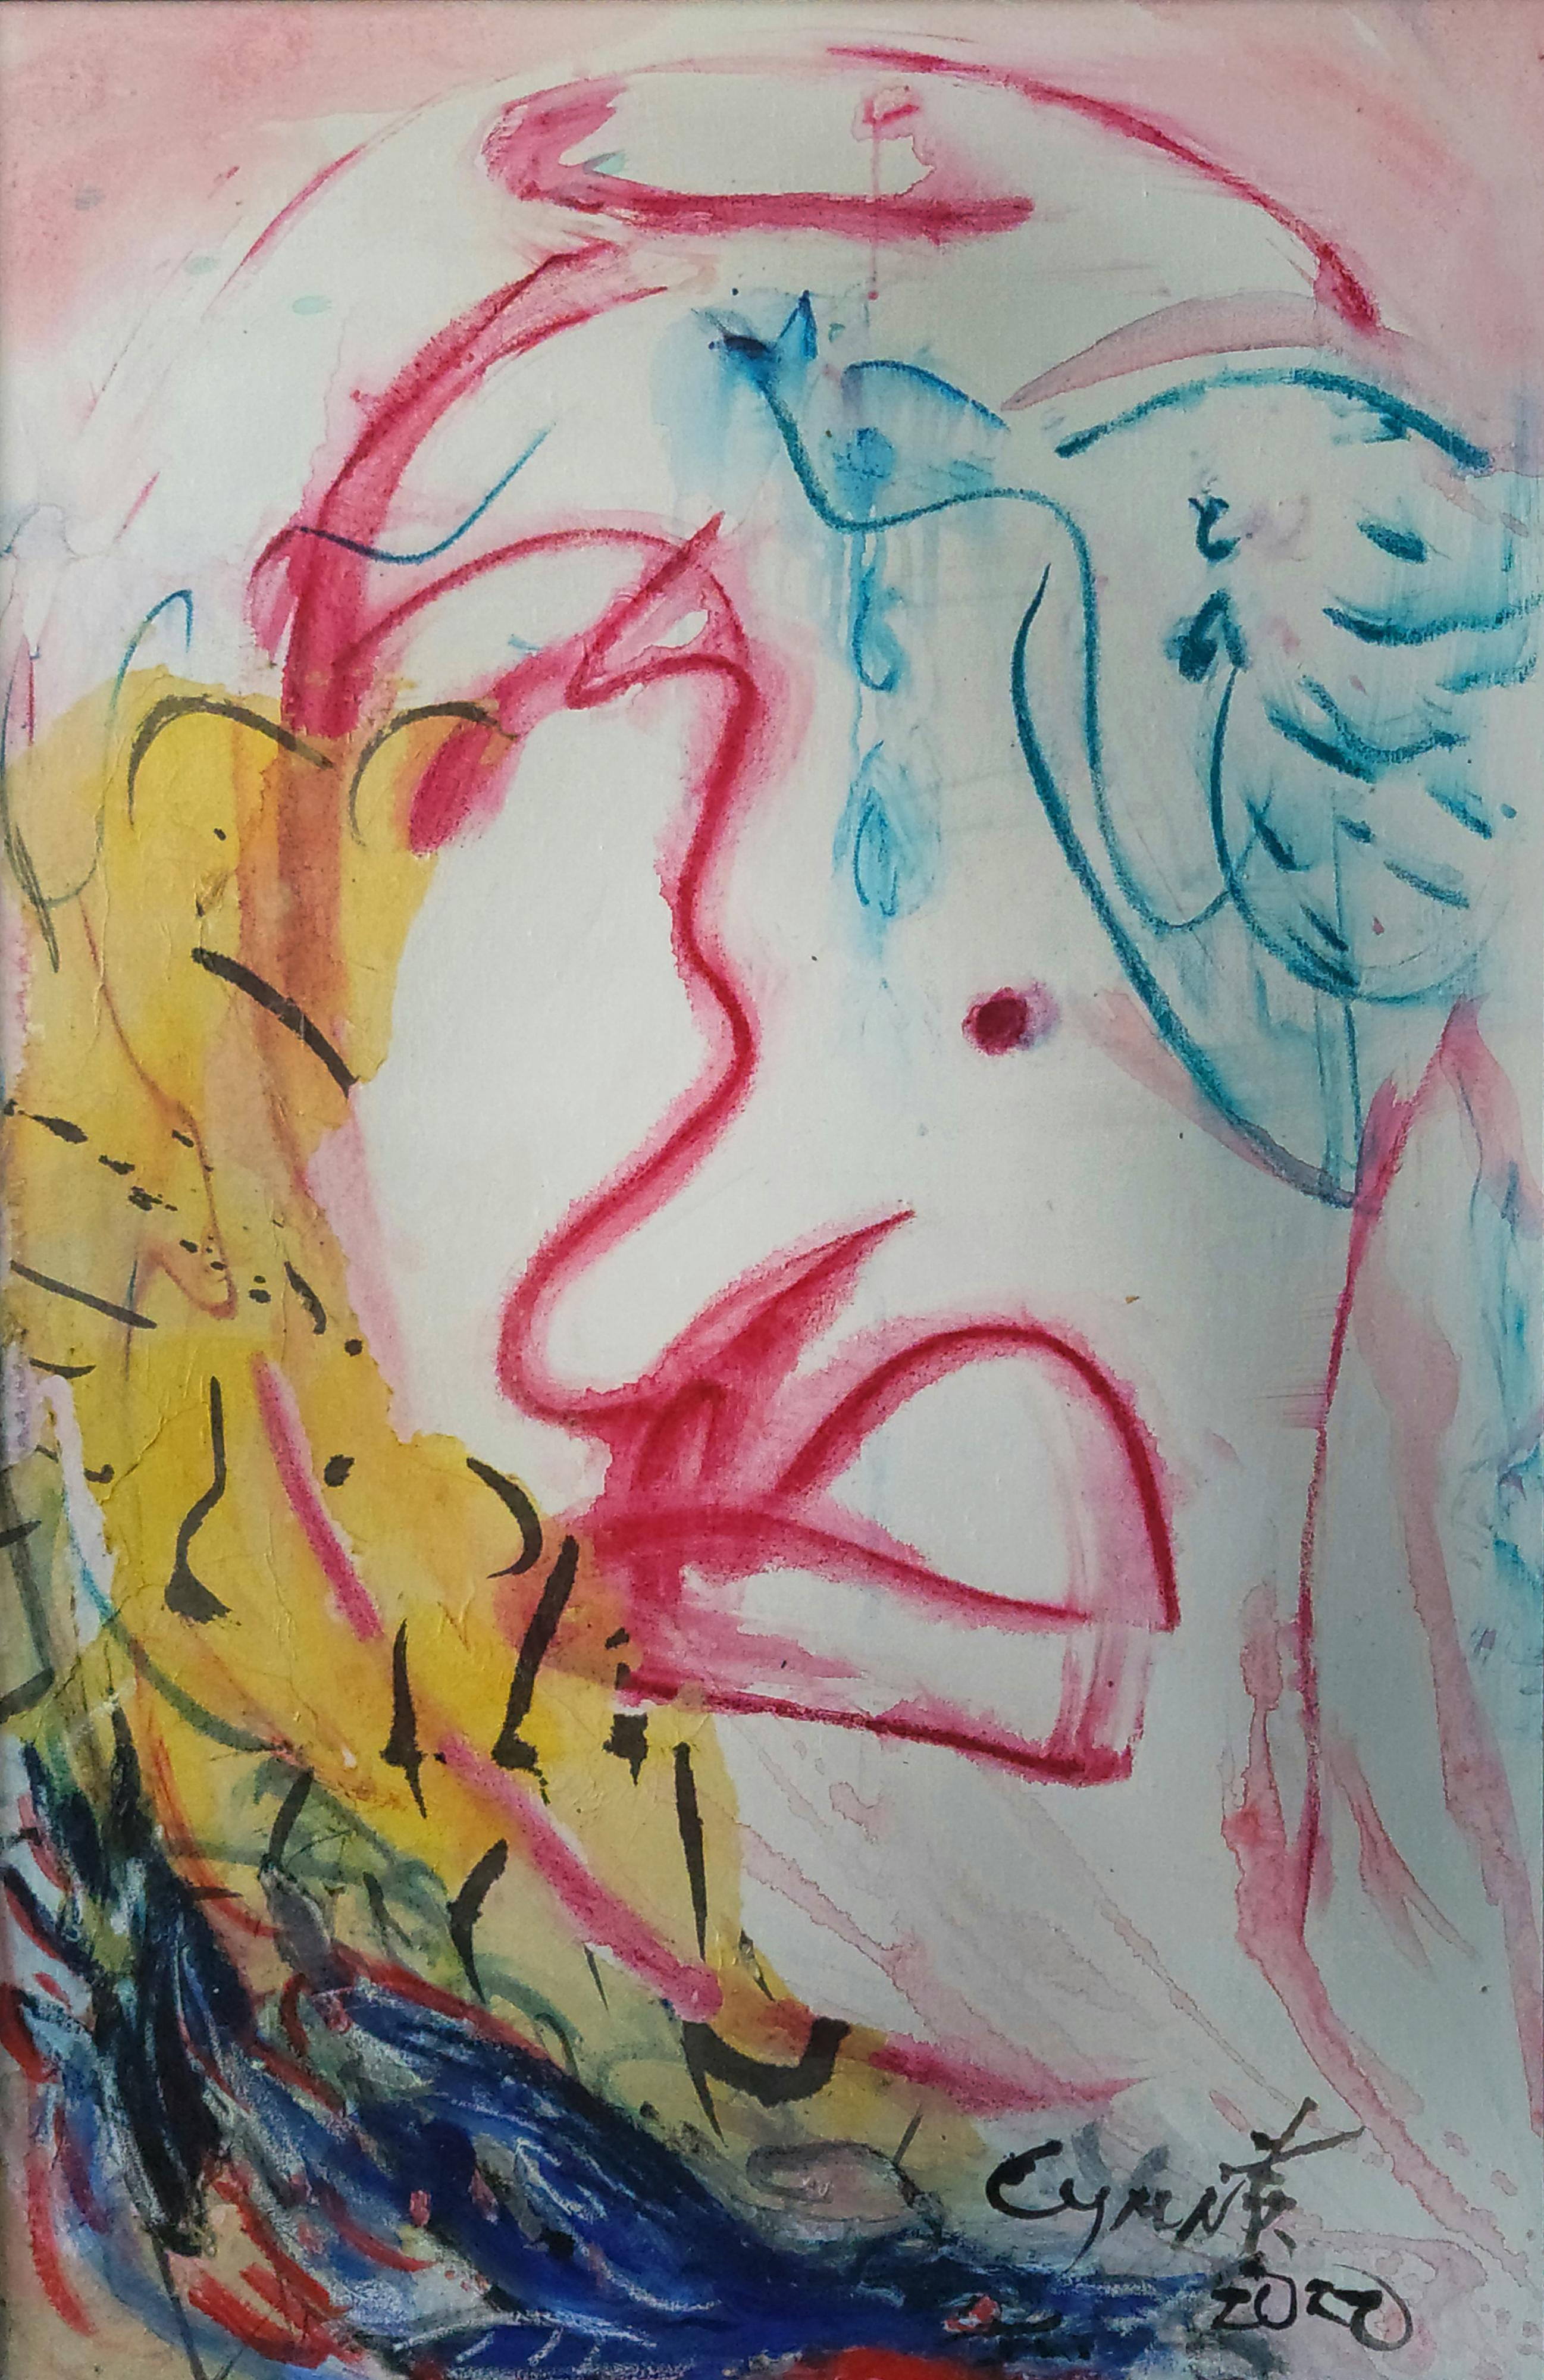 The Facial Hues I - Painting by Cymn Wong 